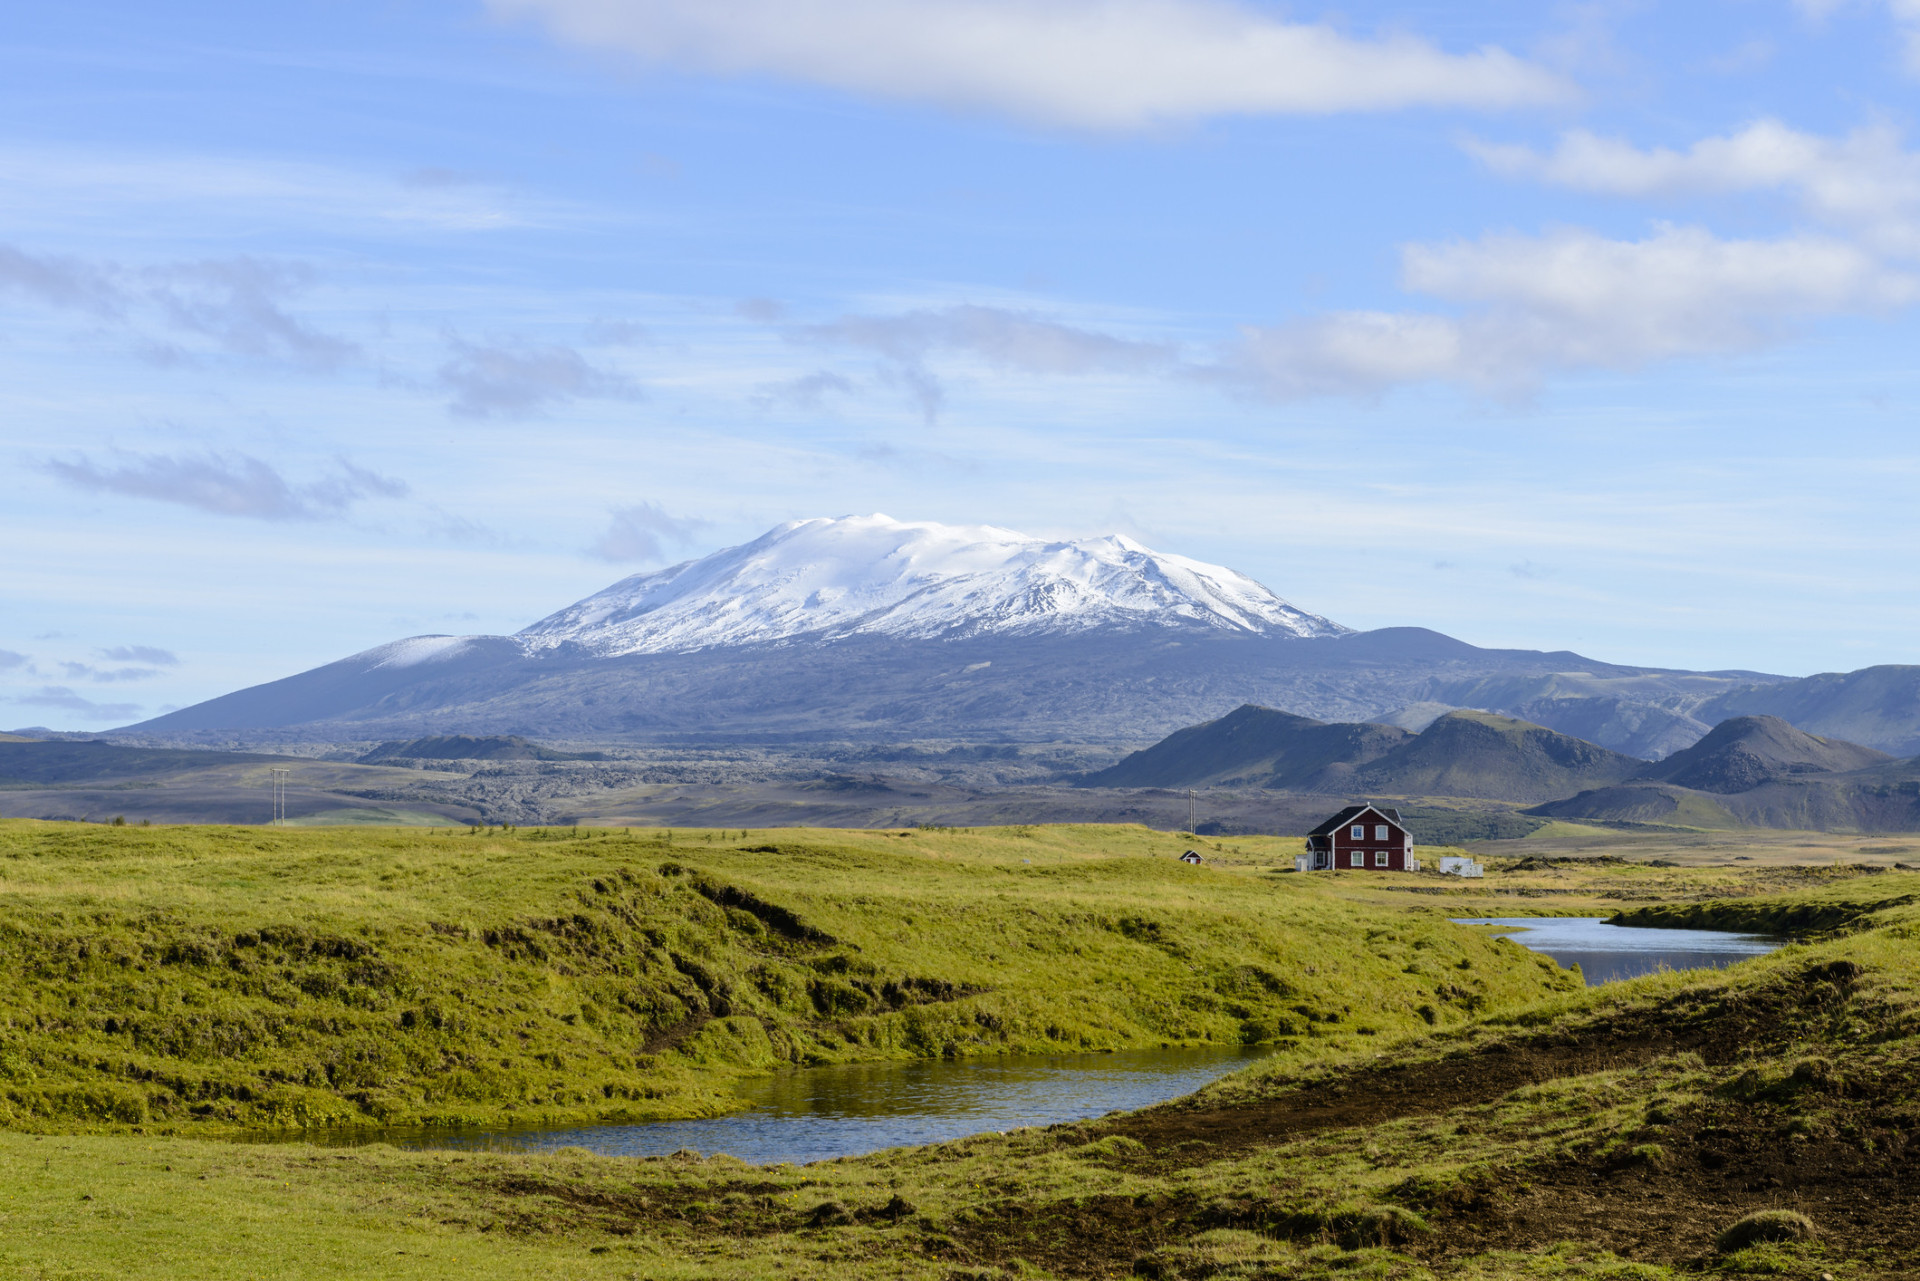 Localisée le long de la côte sud, Hekla est le volcan le plus actif d'Islande. Plus de 20 éruptions ont été enregistrées depuis 1874.<p>Tu pourrais aussi aimer:<a href="https://www.starsinsider.com/n/226772?utm_source=msn.com&utm_medium=display&utm_campaign=referral_description&utm_content=277864v3"> Quand Lio fait son show</a></p>